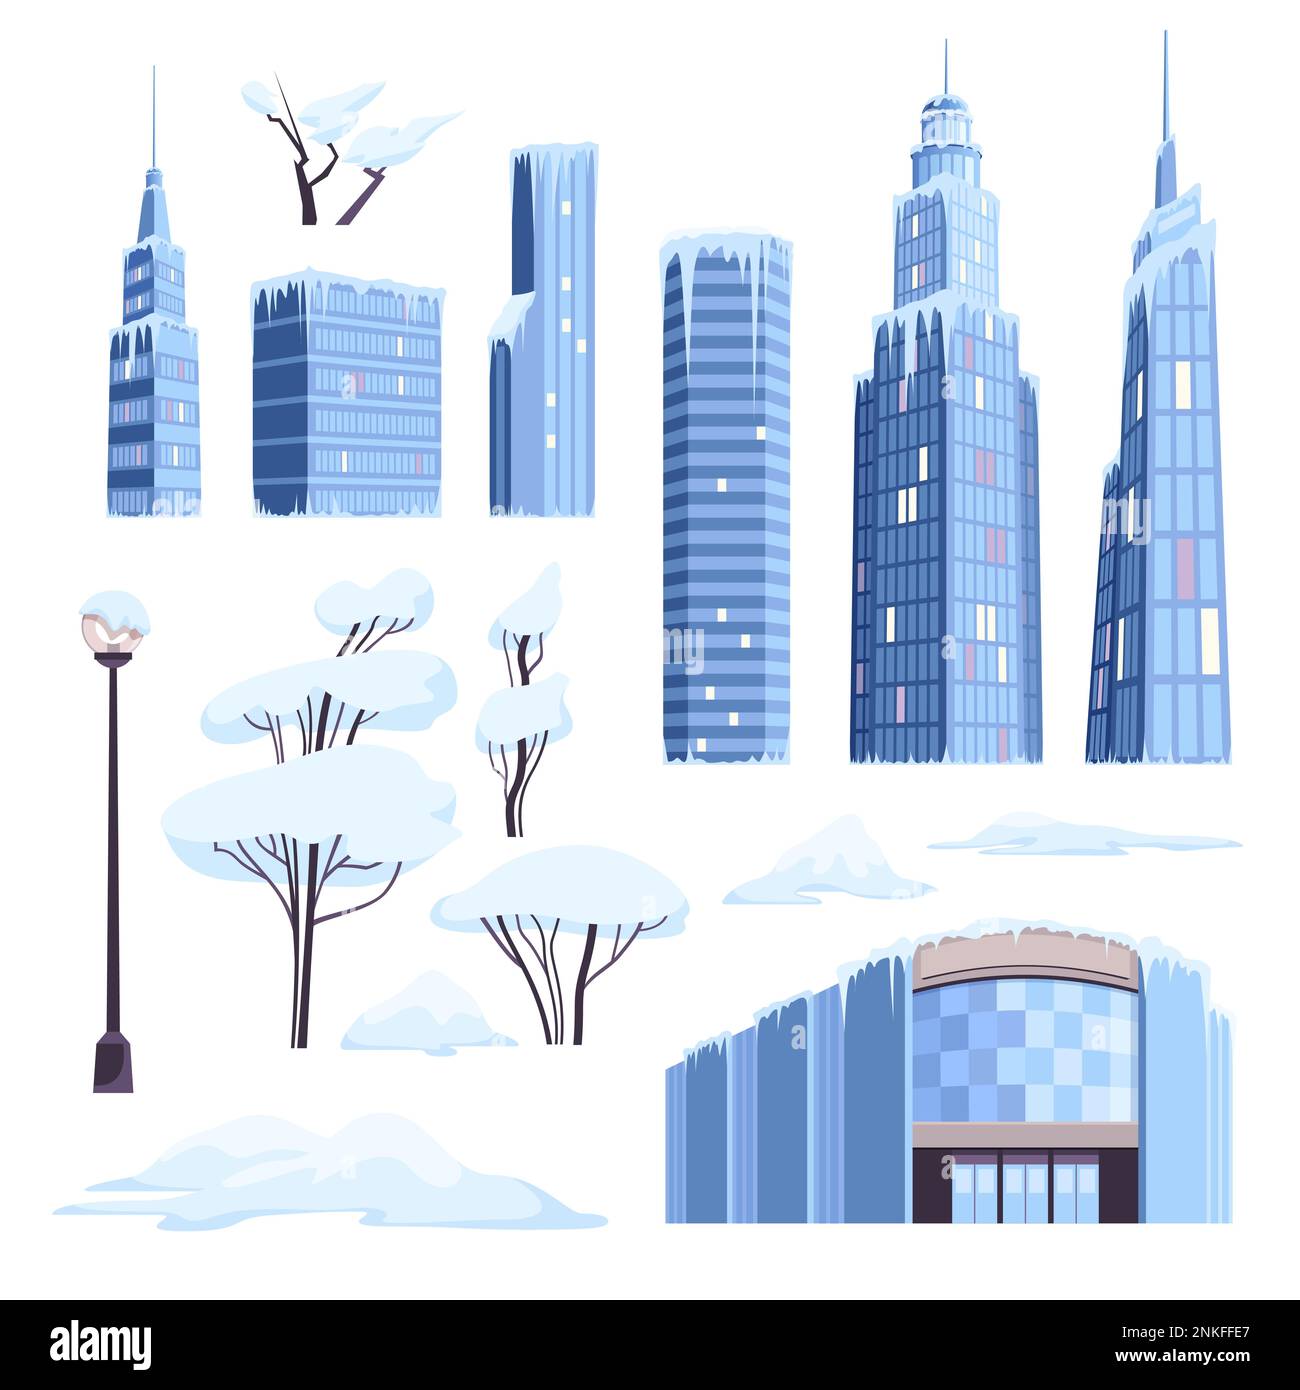 Eisschnee moderne Stadt mit isolierten Ikonen von Wolkenkratzern, Eiszapfen, verschneiten Bäumen und Lampenpfosten-Vektordarstellung Stock Vektor